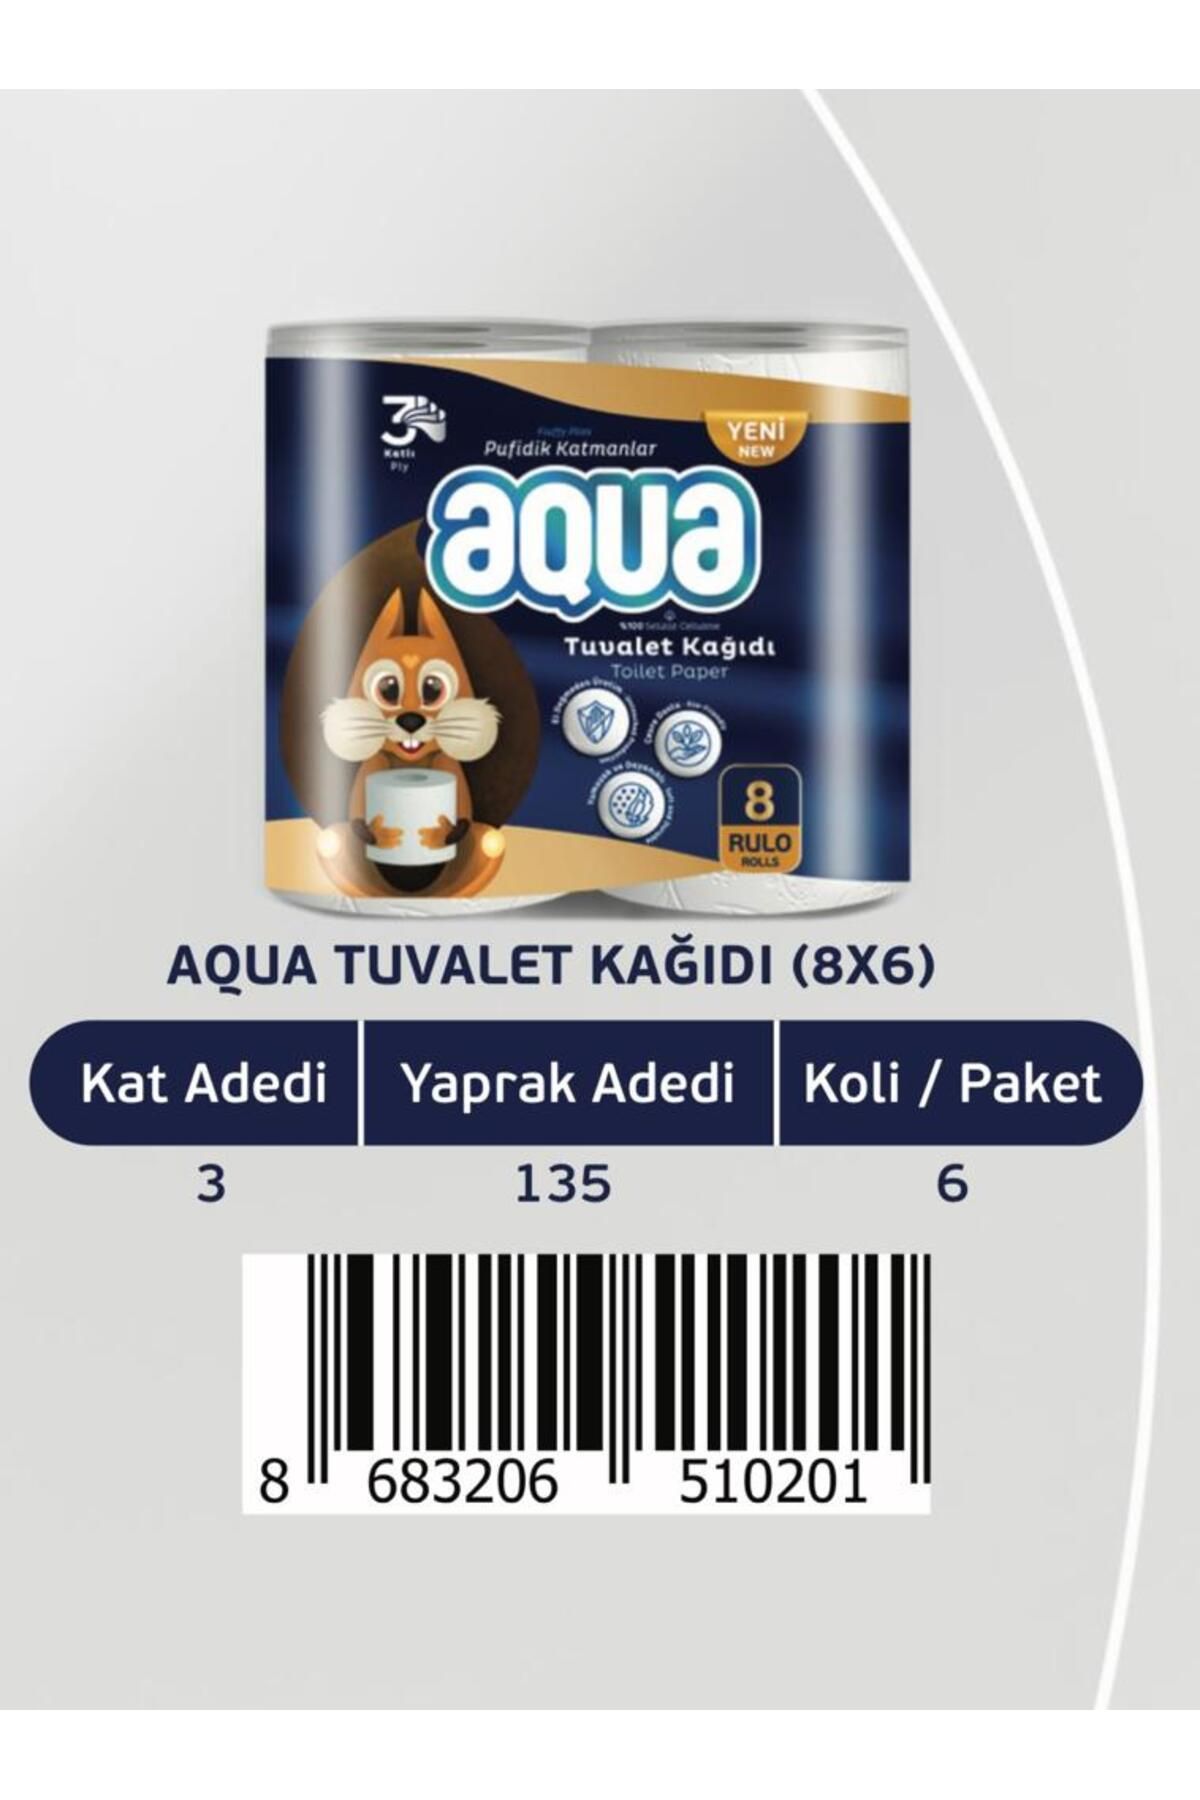 Aqua Tuvalet Kağıdı 8'li 3 Katlı